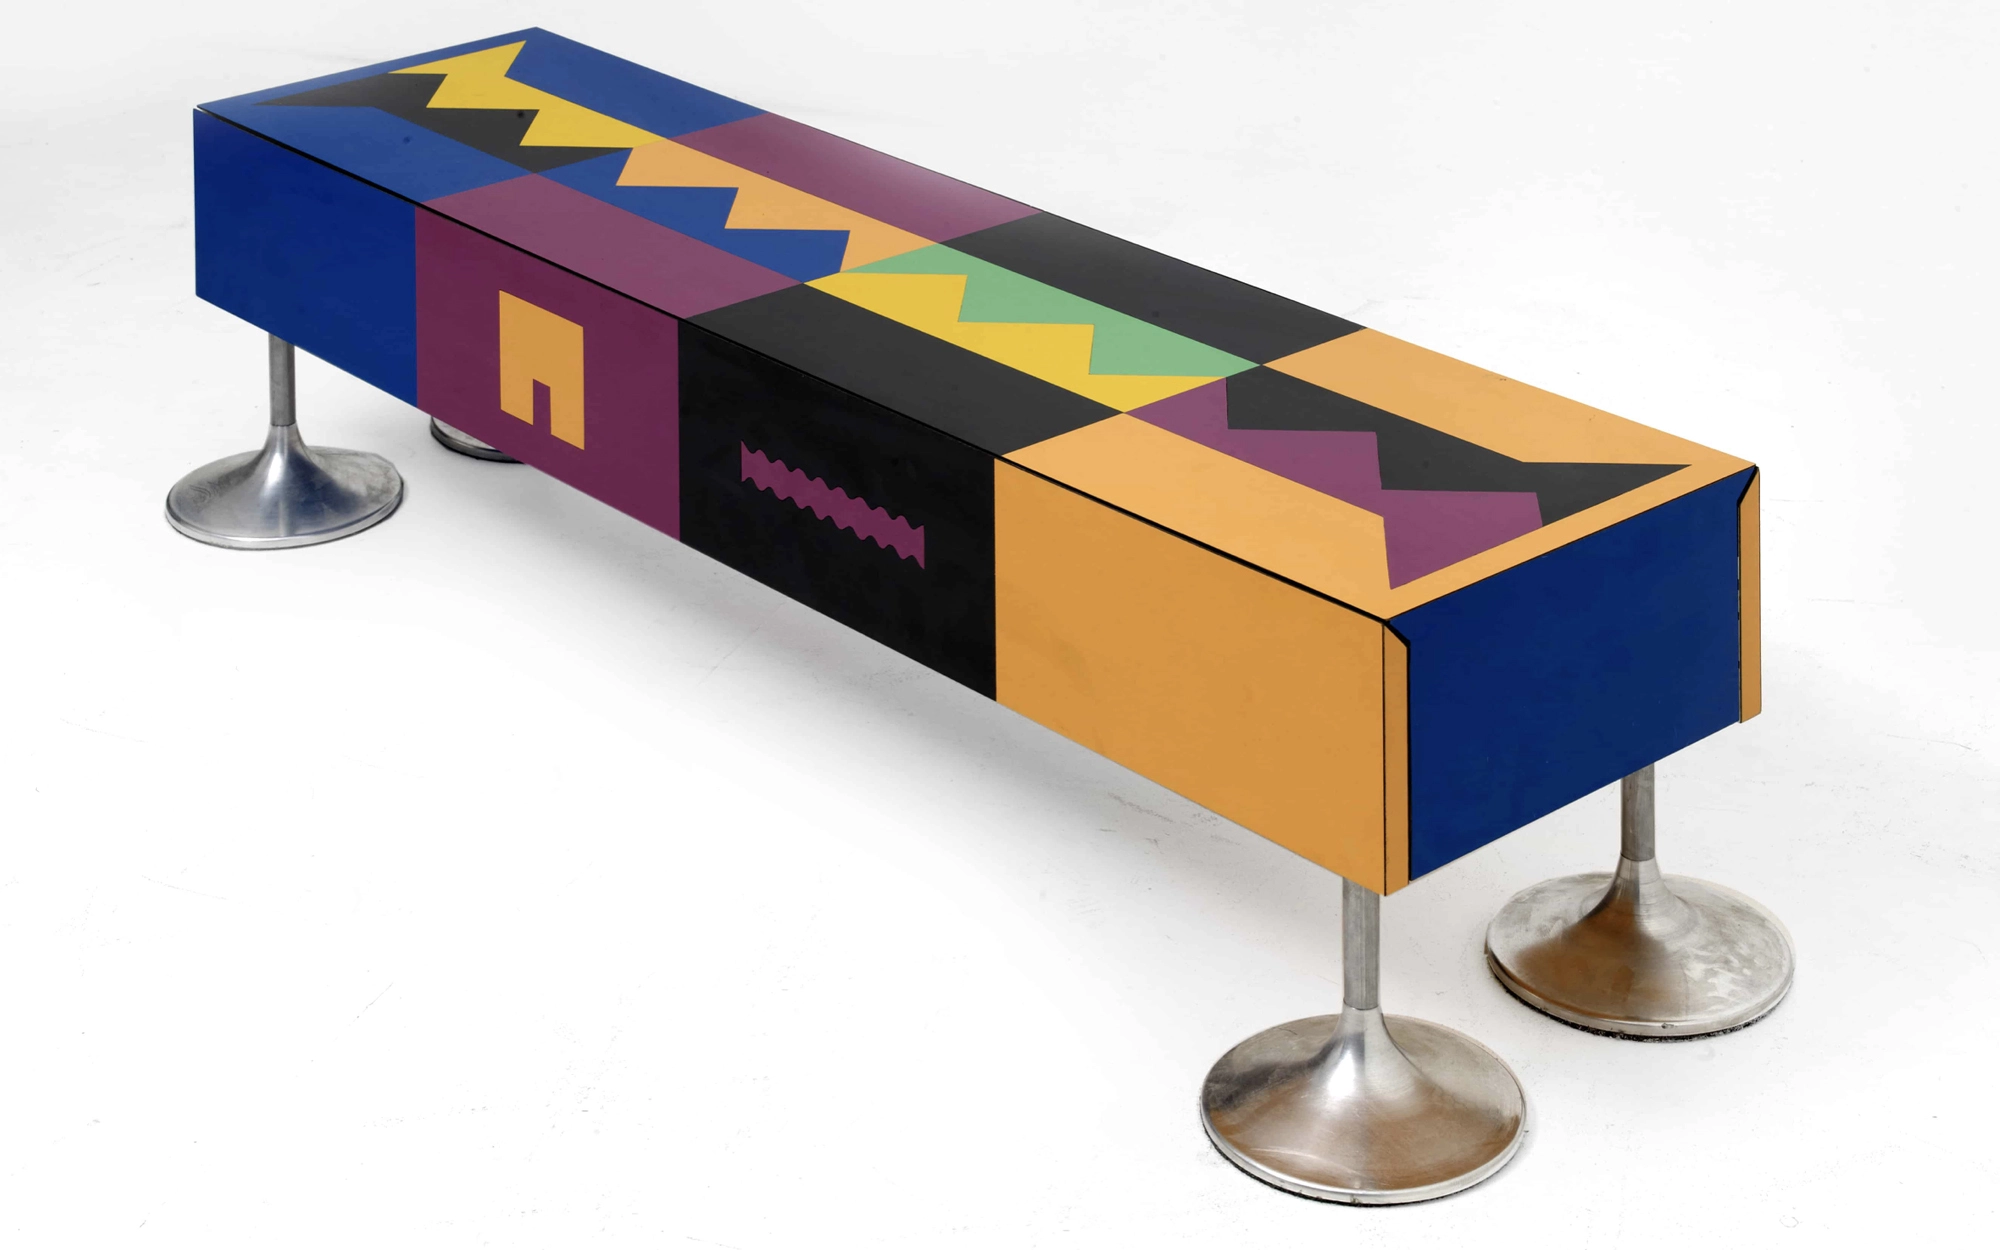 Ollo coffee table - Alessandro and Giorgio Mendini and Gregori - coffee-table - Galerie kreo